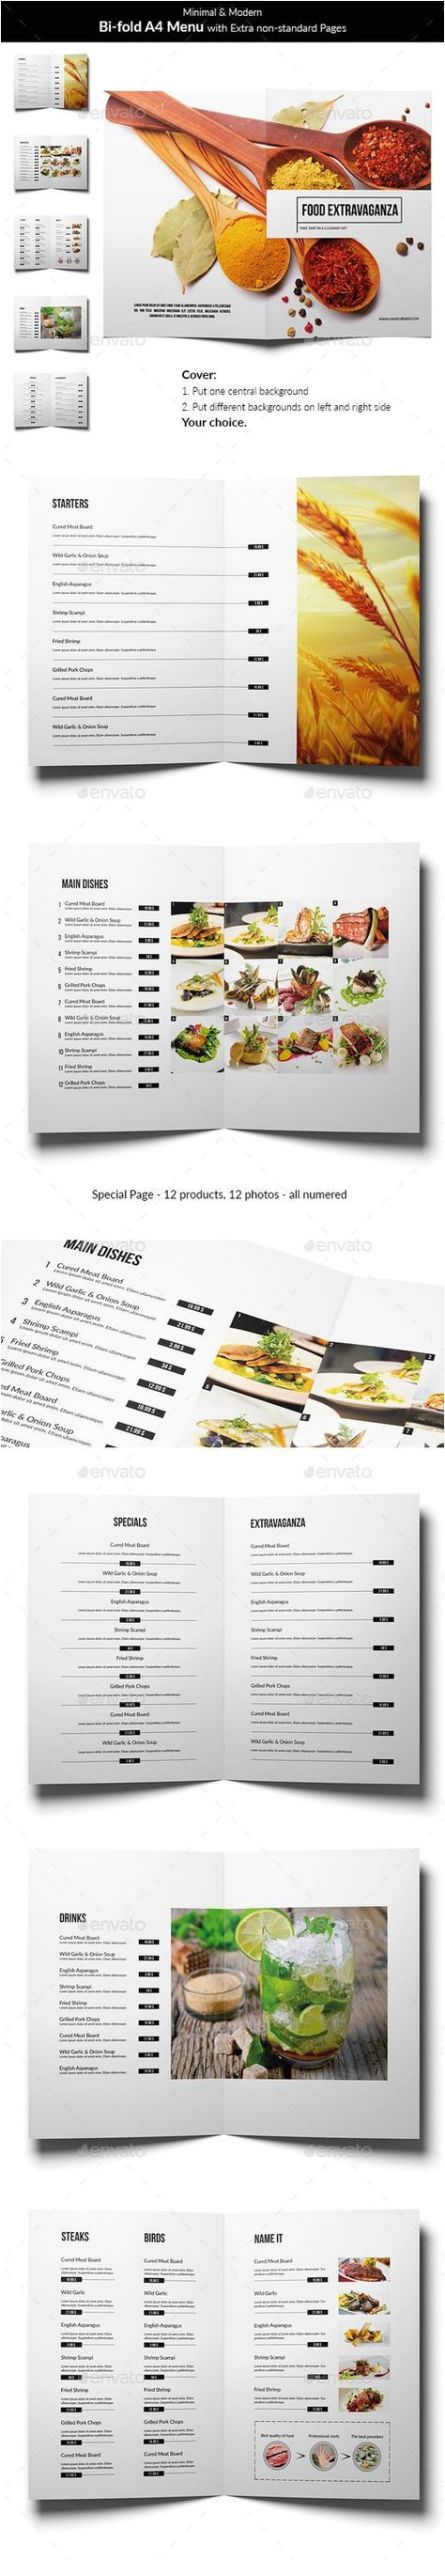 0abd17d614a5bb50e0c7a763331ea639 restaurant menu design design menu jpg